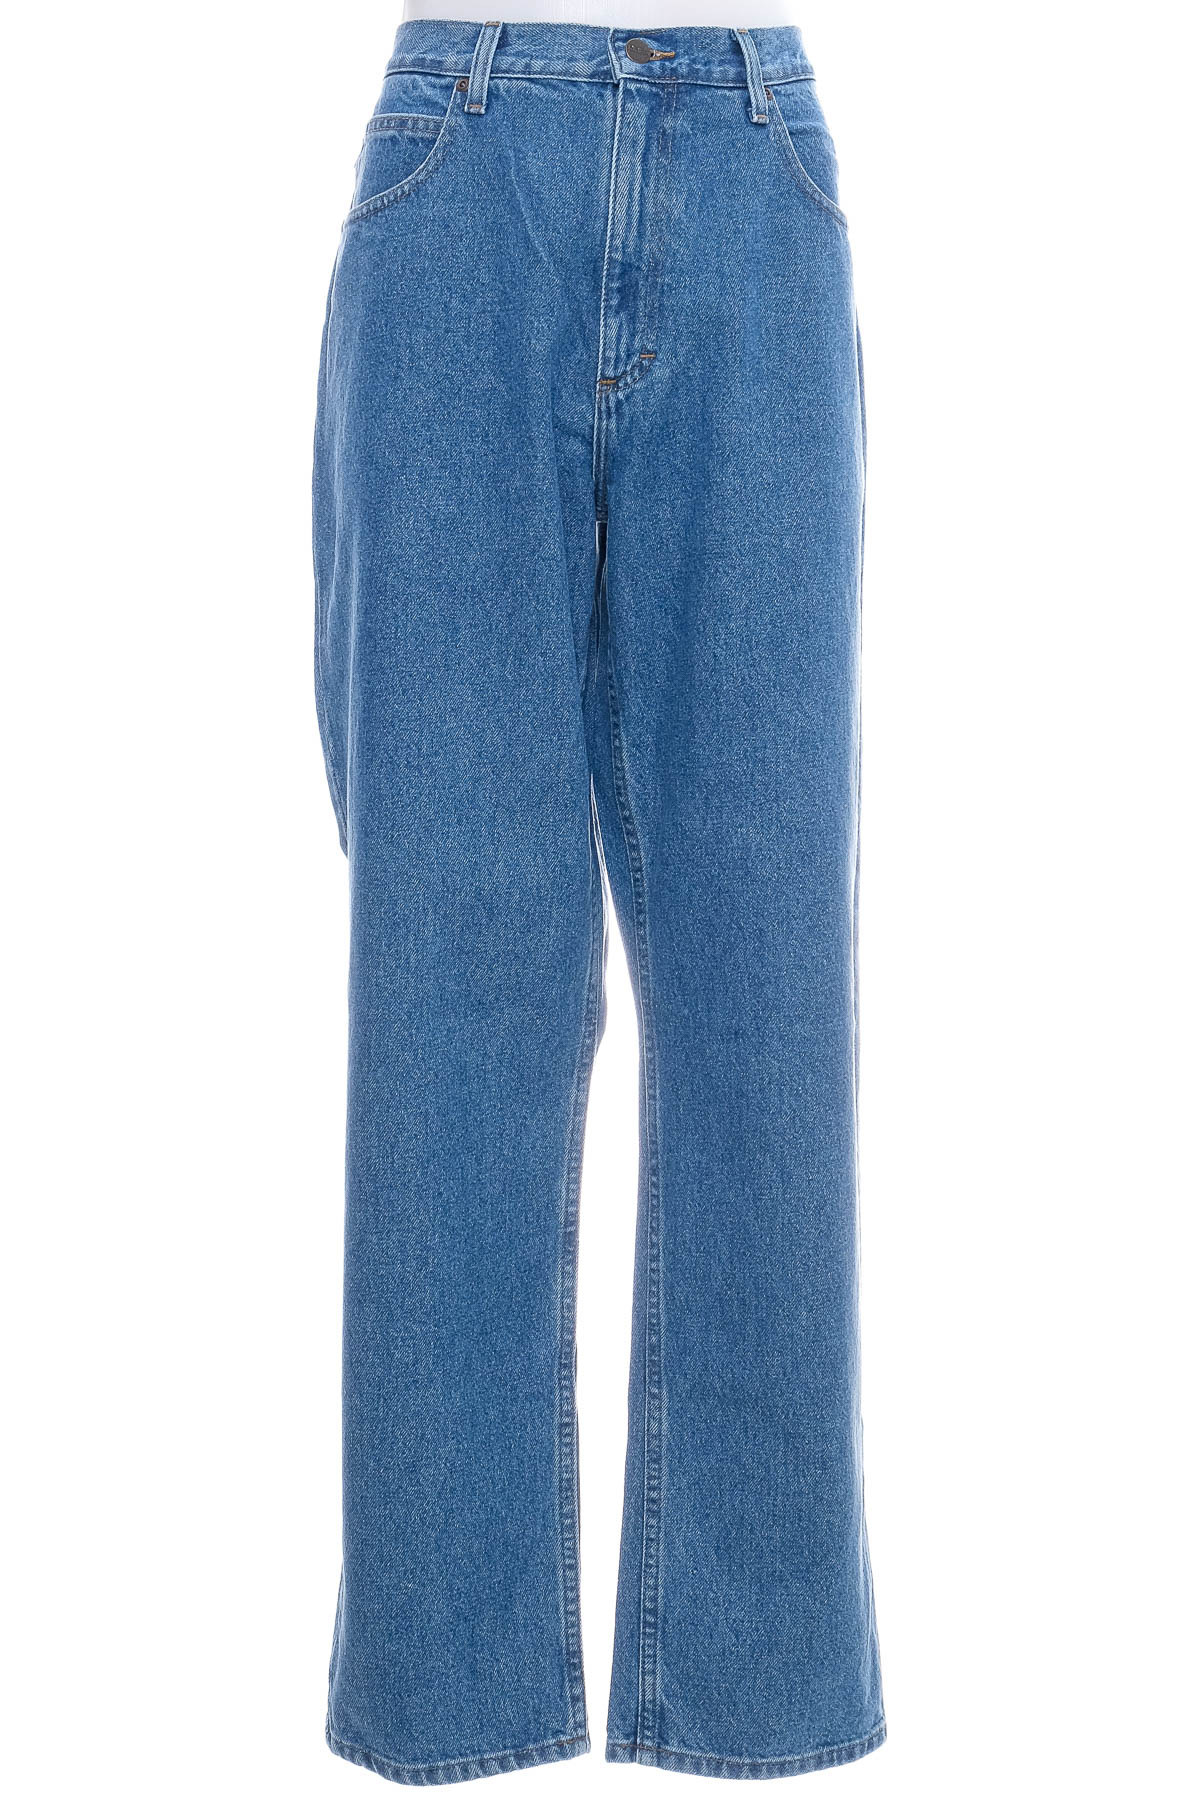 Men's jeans - L.L.Bean - 0